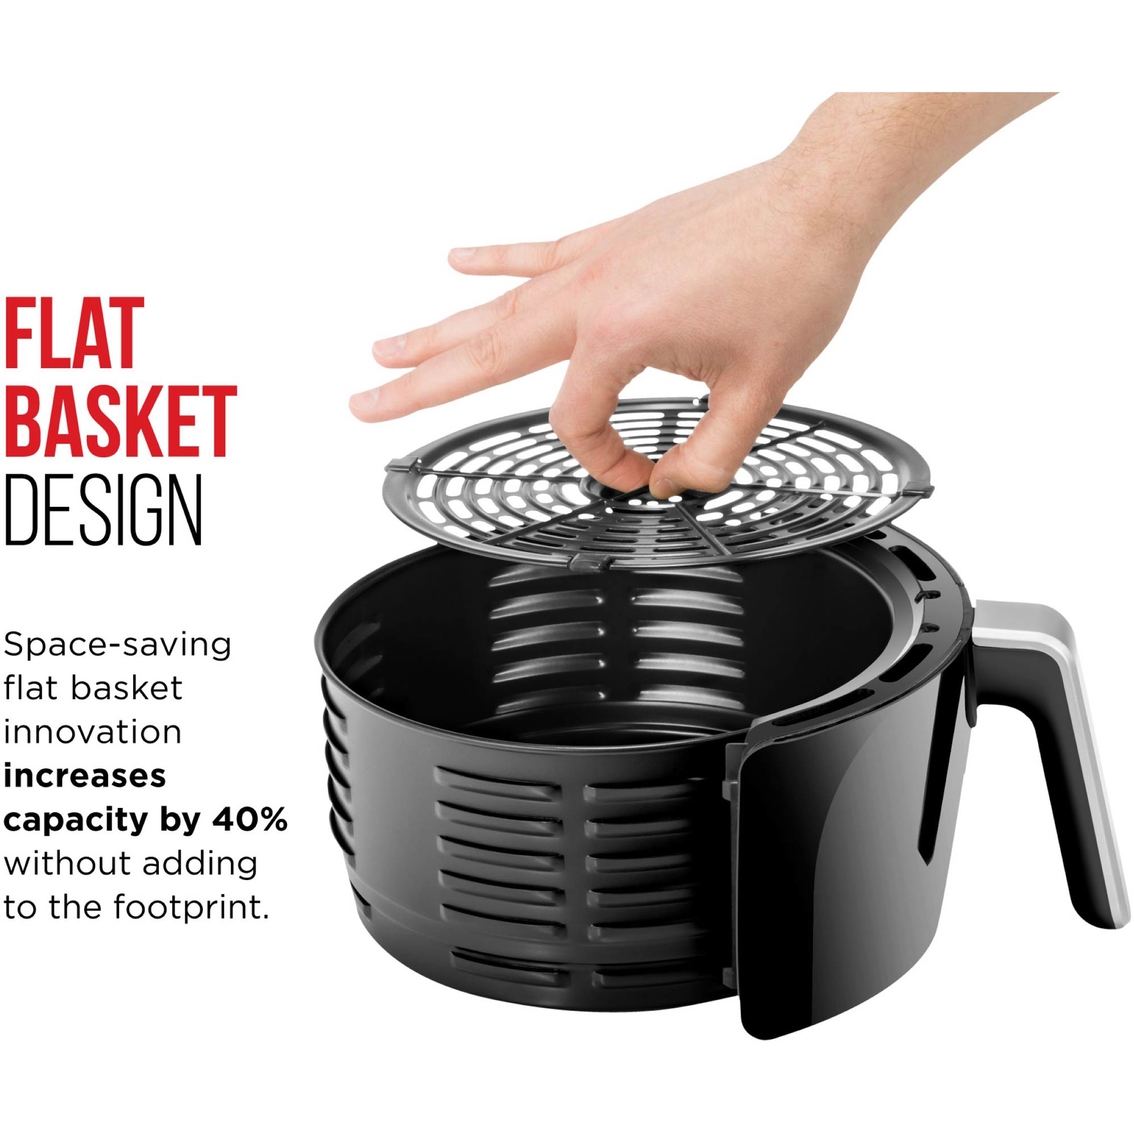 Jumbo Deep Fryer (Dual-Basket) – Chefman